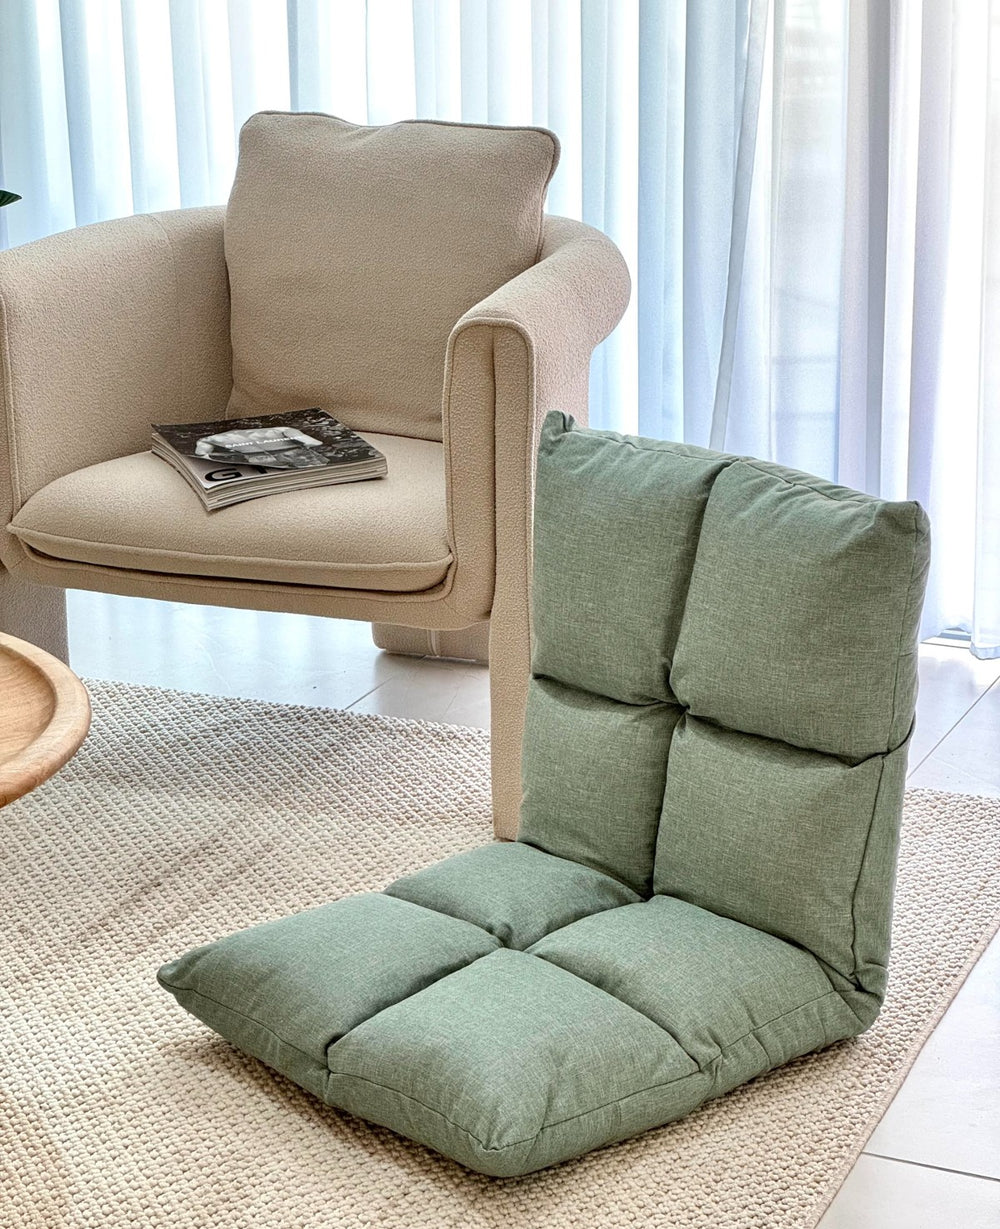 כיסא יפני טוקיו ירוק - במכירה מוקדמת